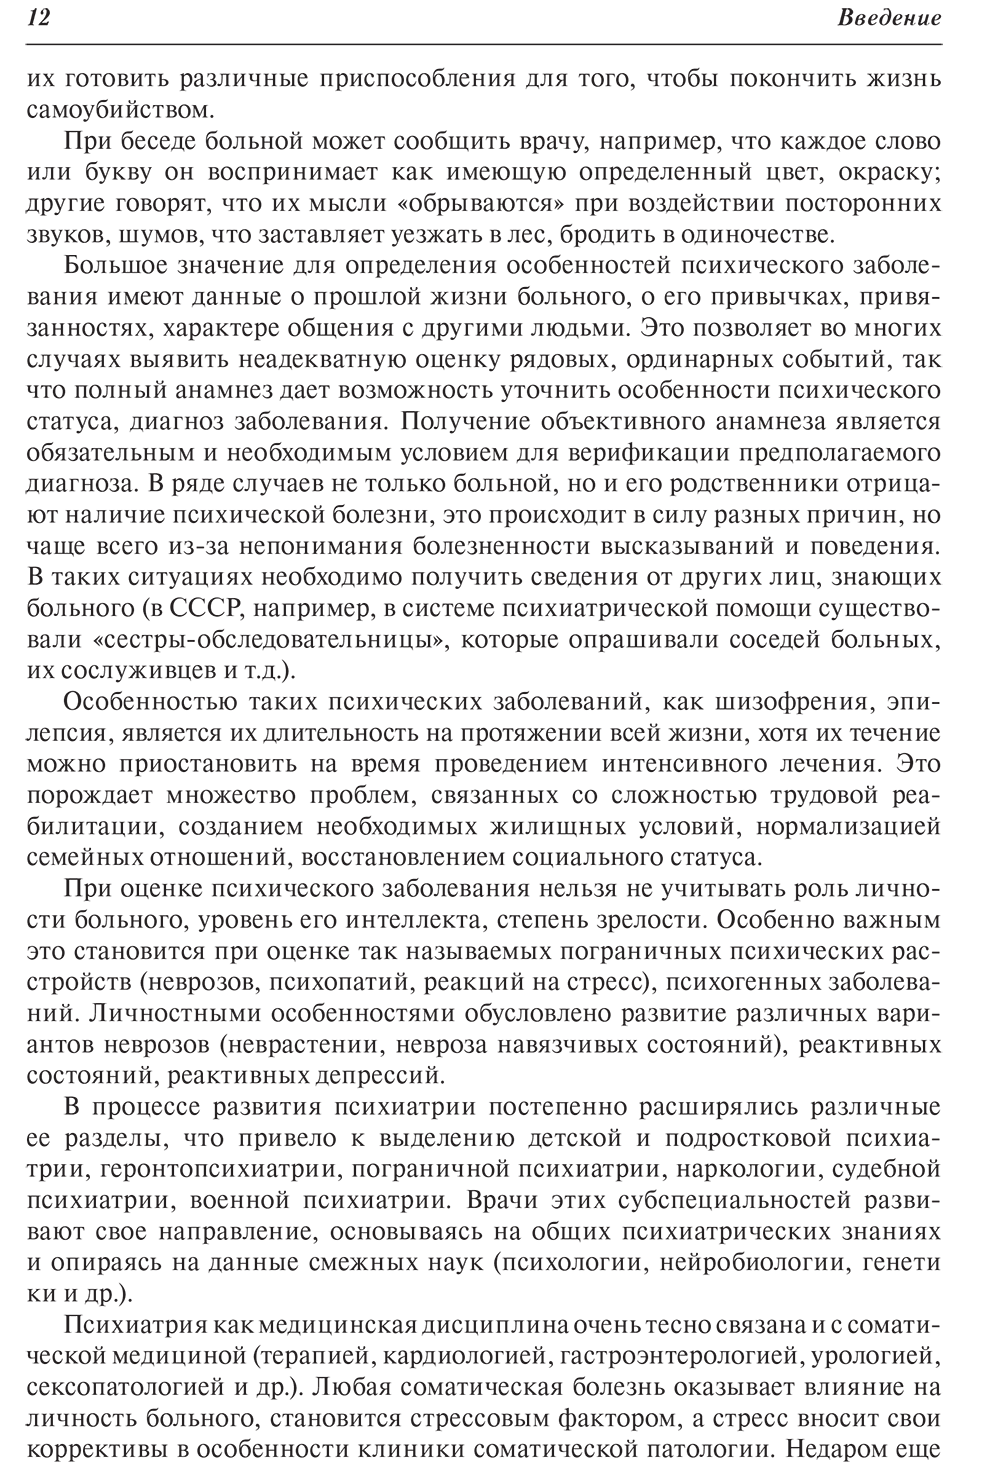 Пример страницы из книги "Психиатрия. Руководство" - Цыганков Б. Д., Овсянников С. А.